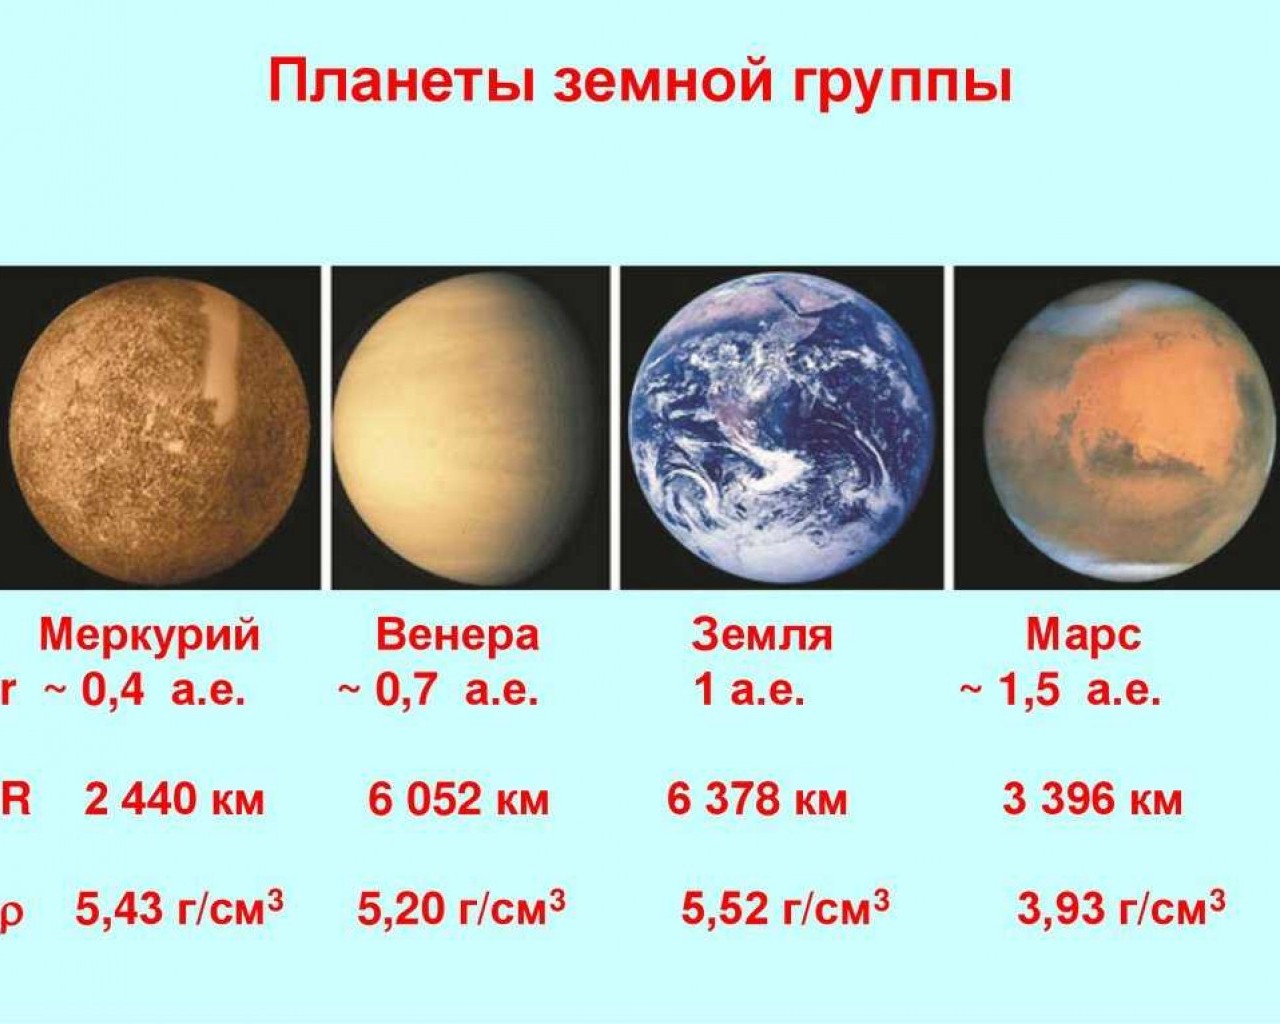 Планеты, принадлежащие земной группе - Венера, Земля и Марс